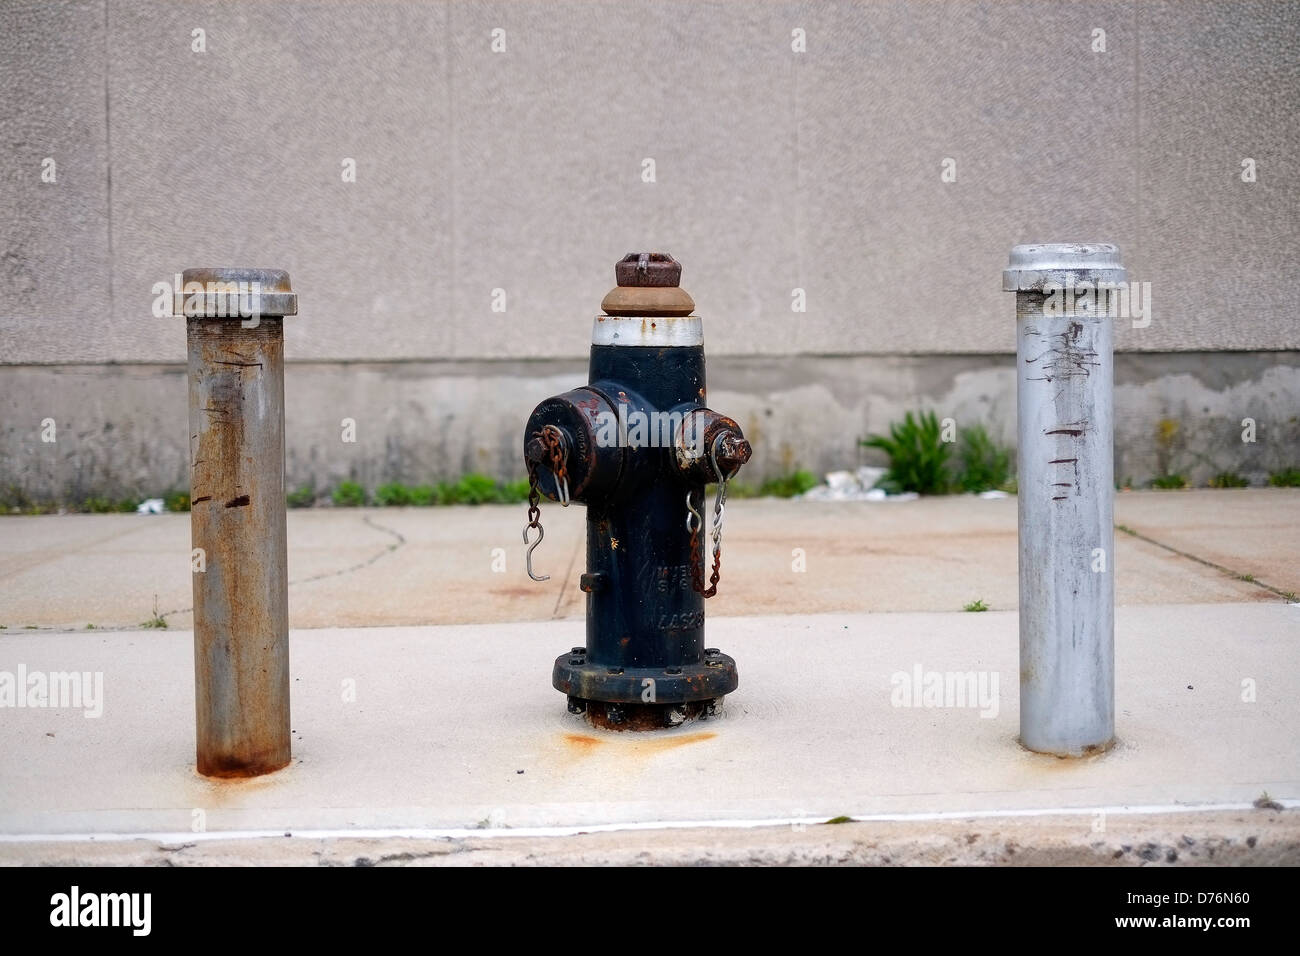 Ein New York City Fire Hydrant auf eine Straße in der gowanus Stadtteil von Brooklyn. Stockfoto